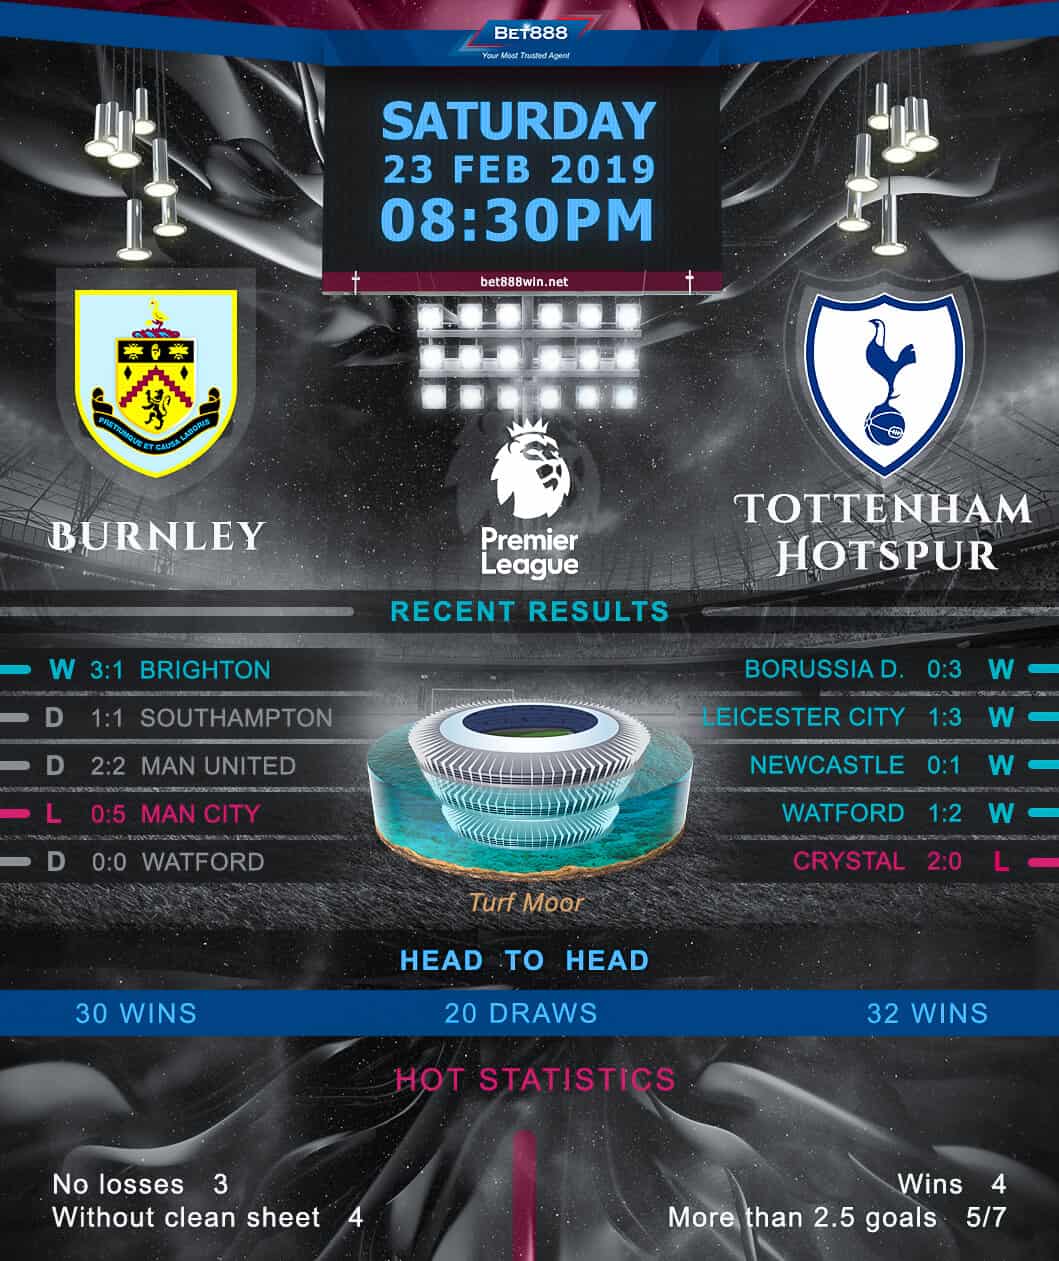 Burnley vs Tottenham Hotspur 23/02/19